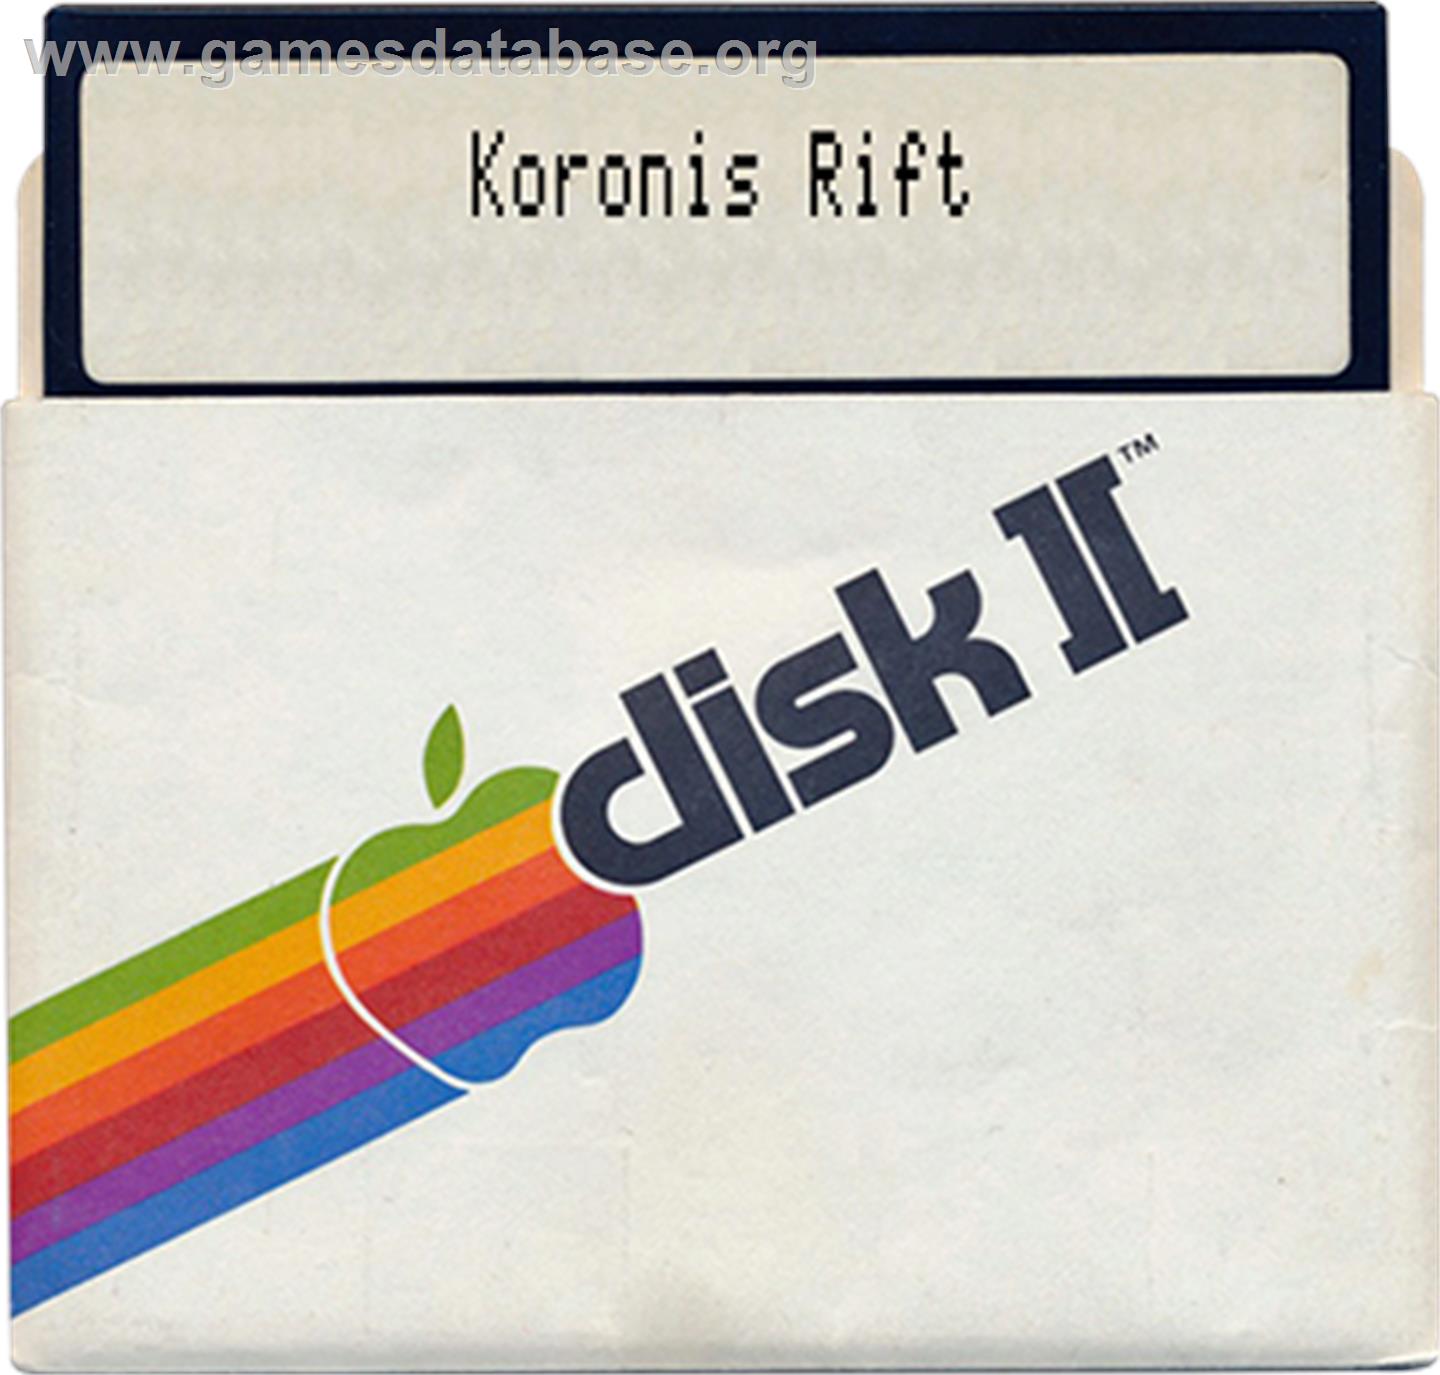 Koronis Rift - Apple II - Artwork - Disc